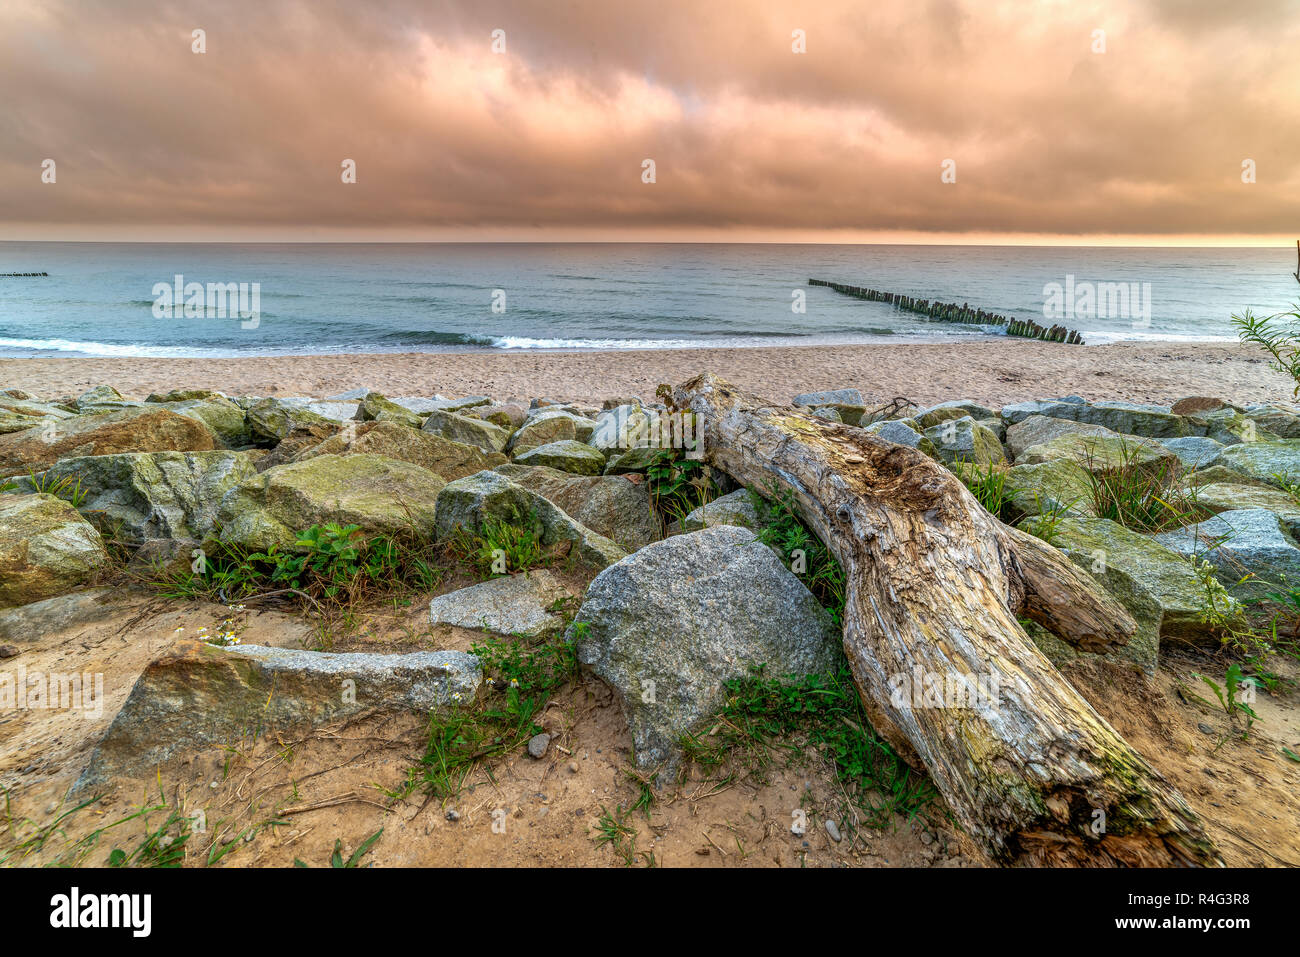 Paesaggio dal mare, legno, pietre, sabbia, onde. arancione cielo nuvoloso Foto Stock